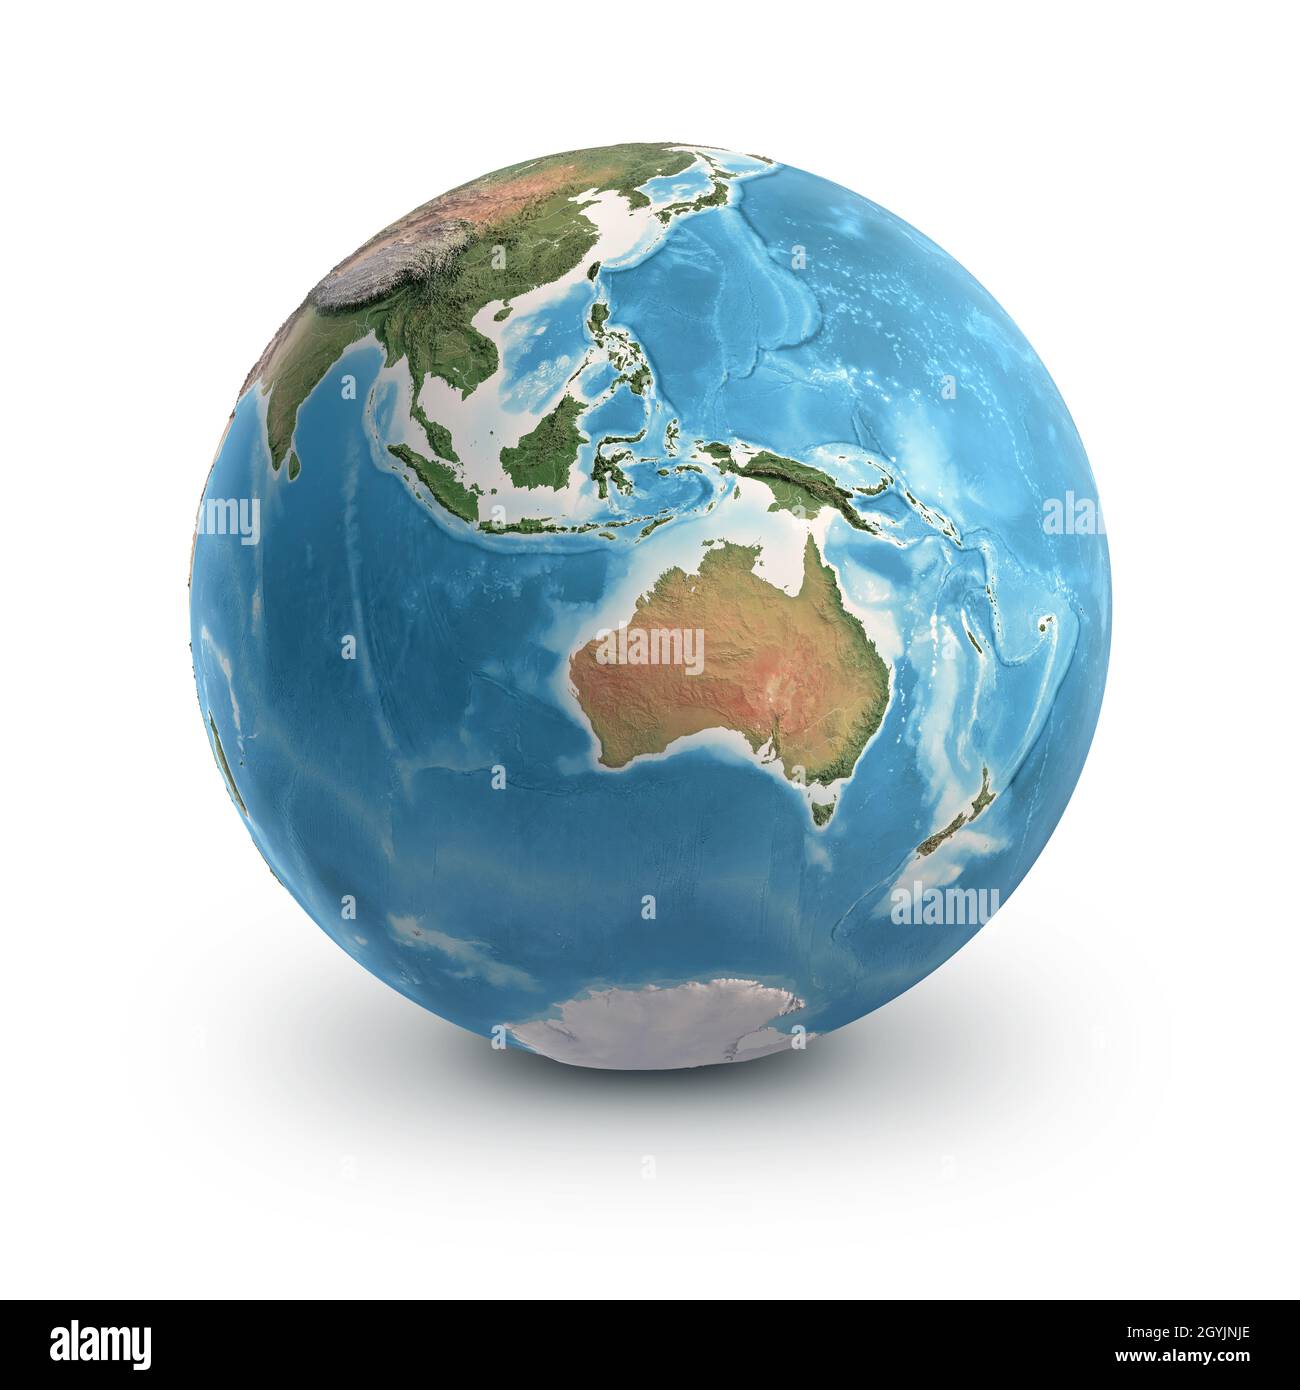 Pianeta Terra globo, isolato su bianco. Geografia del mondo dallo spazio, focalizzato su Australia e Sud-Est asiatico. Elementi forniti dalla NASA Foto Stock